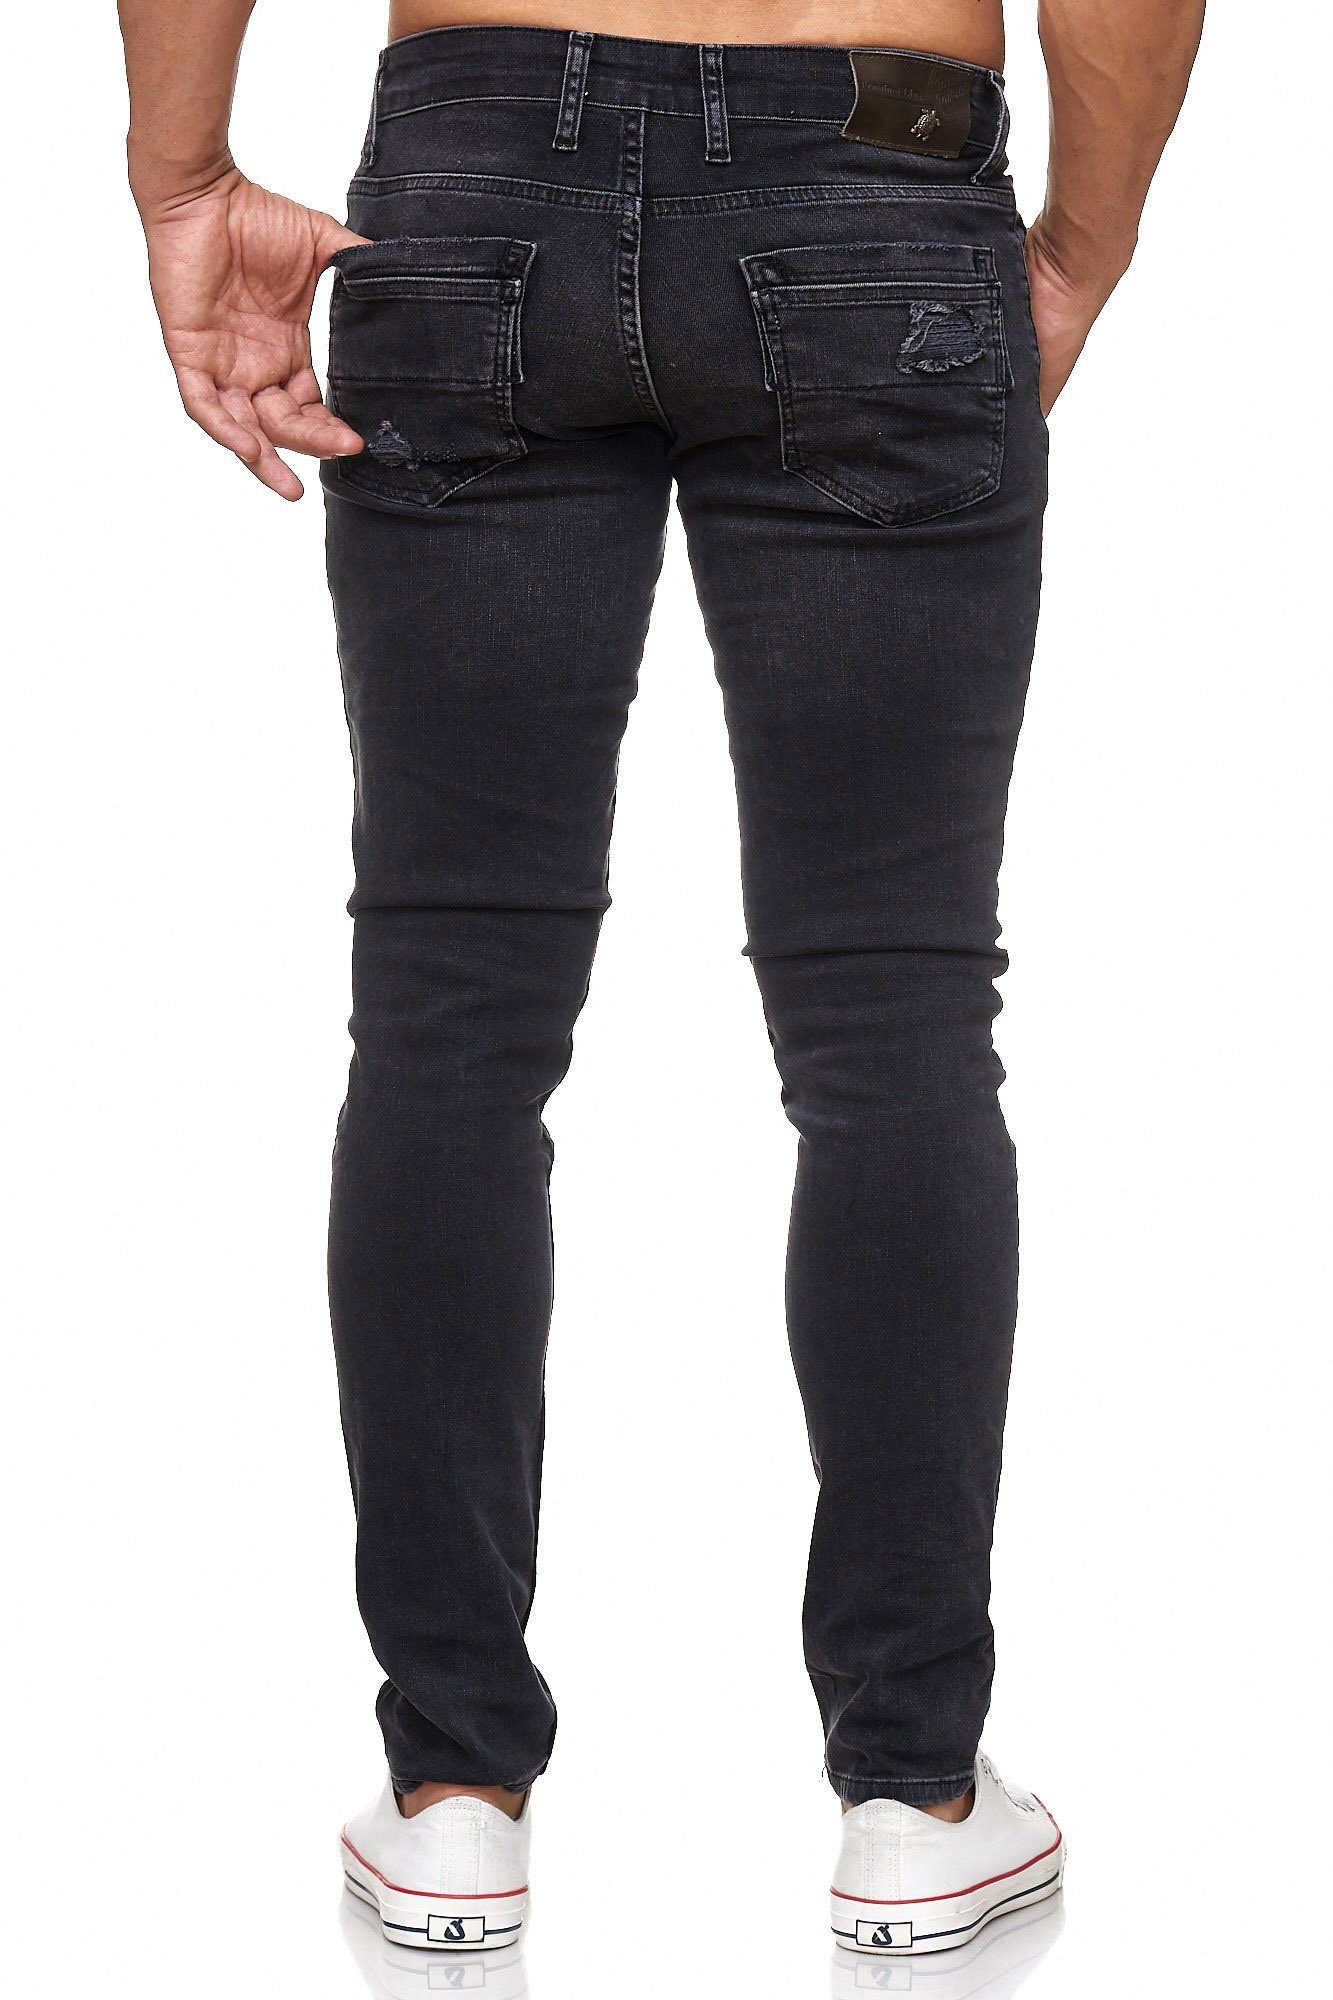 Tazzio Slim-fit-Jeans 17502 im schwarz Destroyed-Look